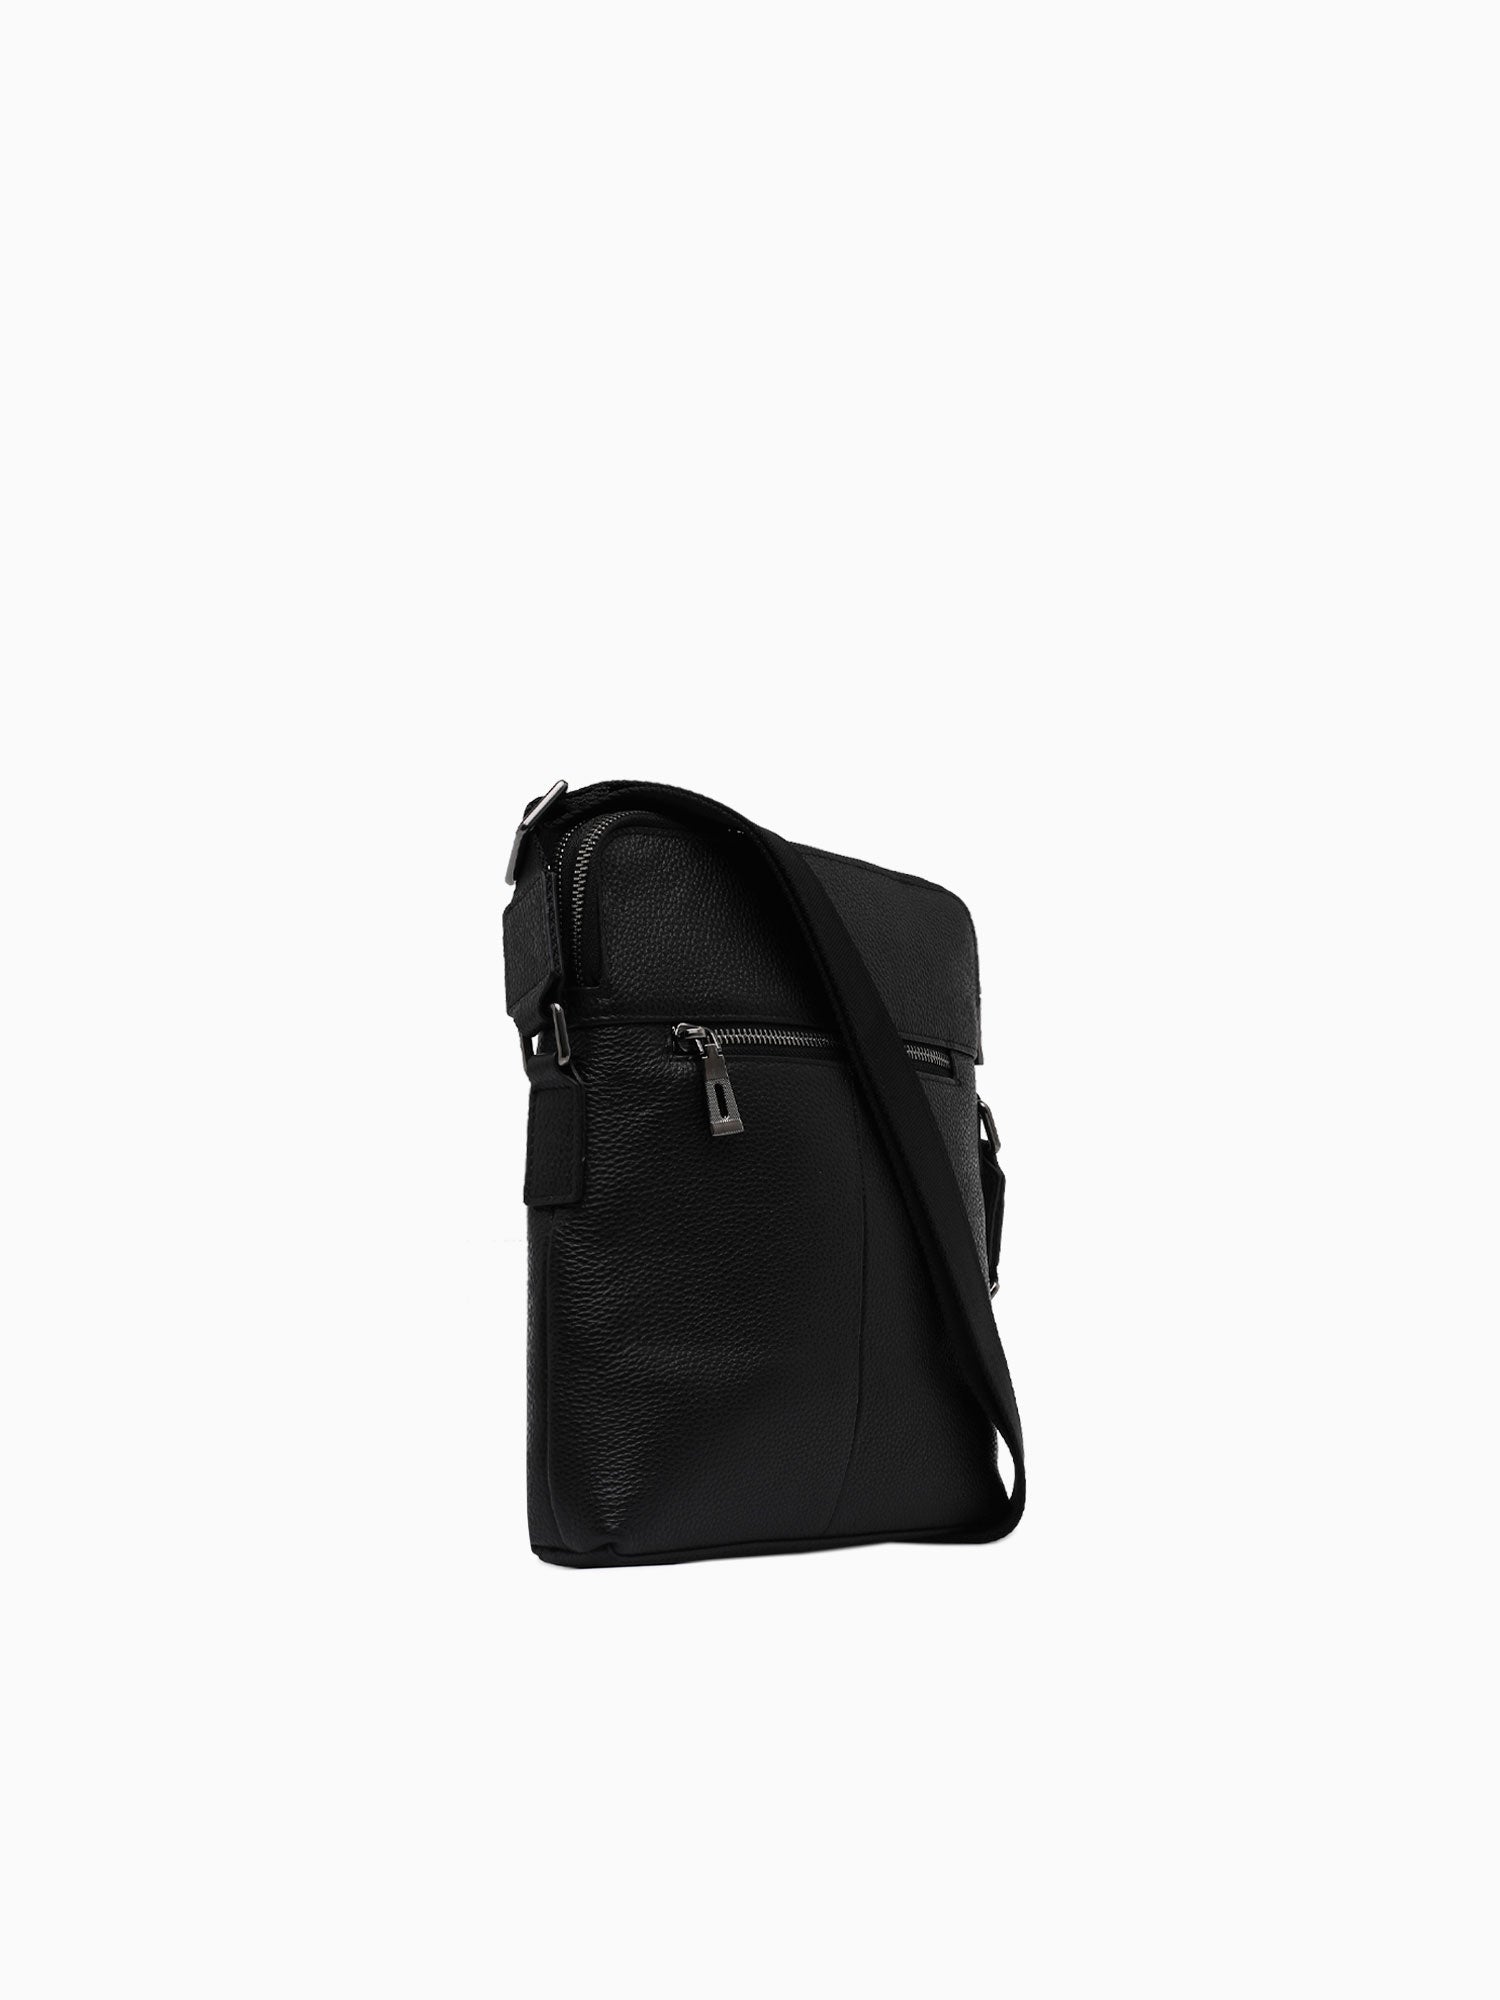 003 Pocket Crossbag Blk Black